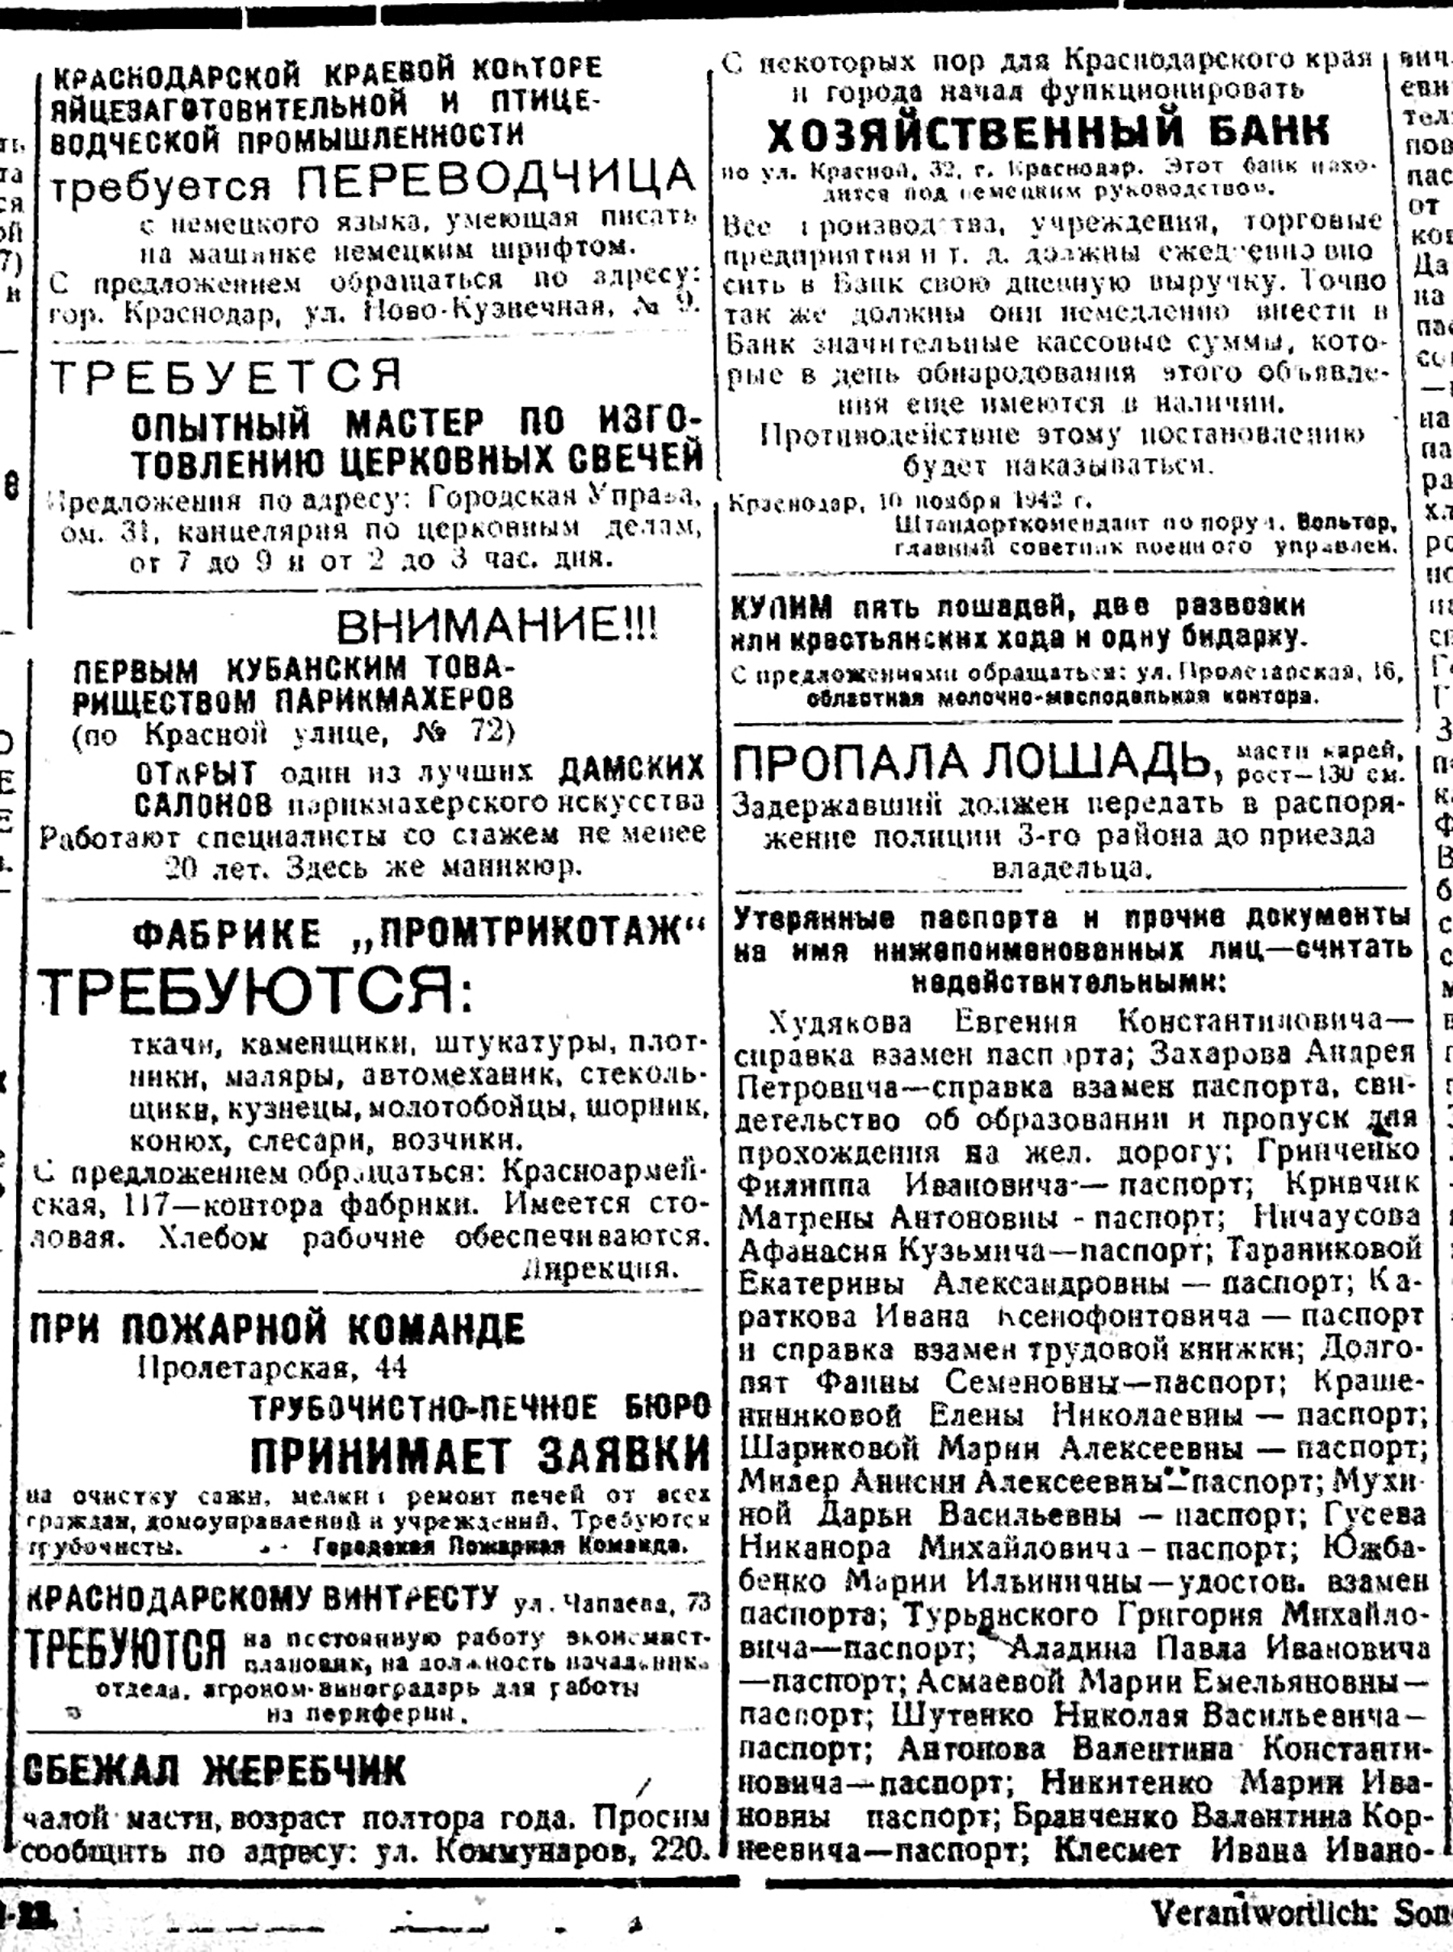 Объявления из газеты «Кубань»